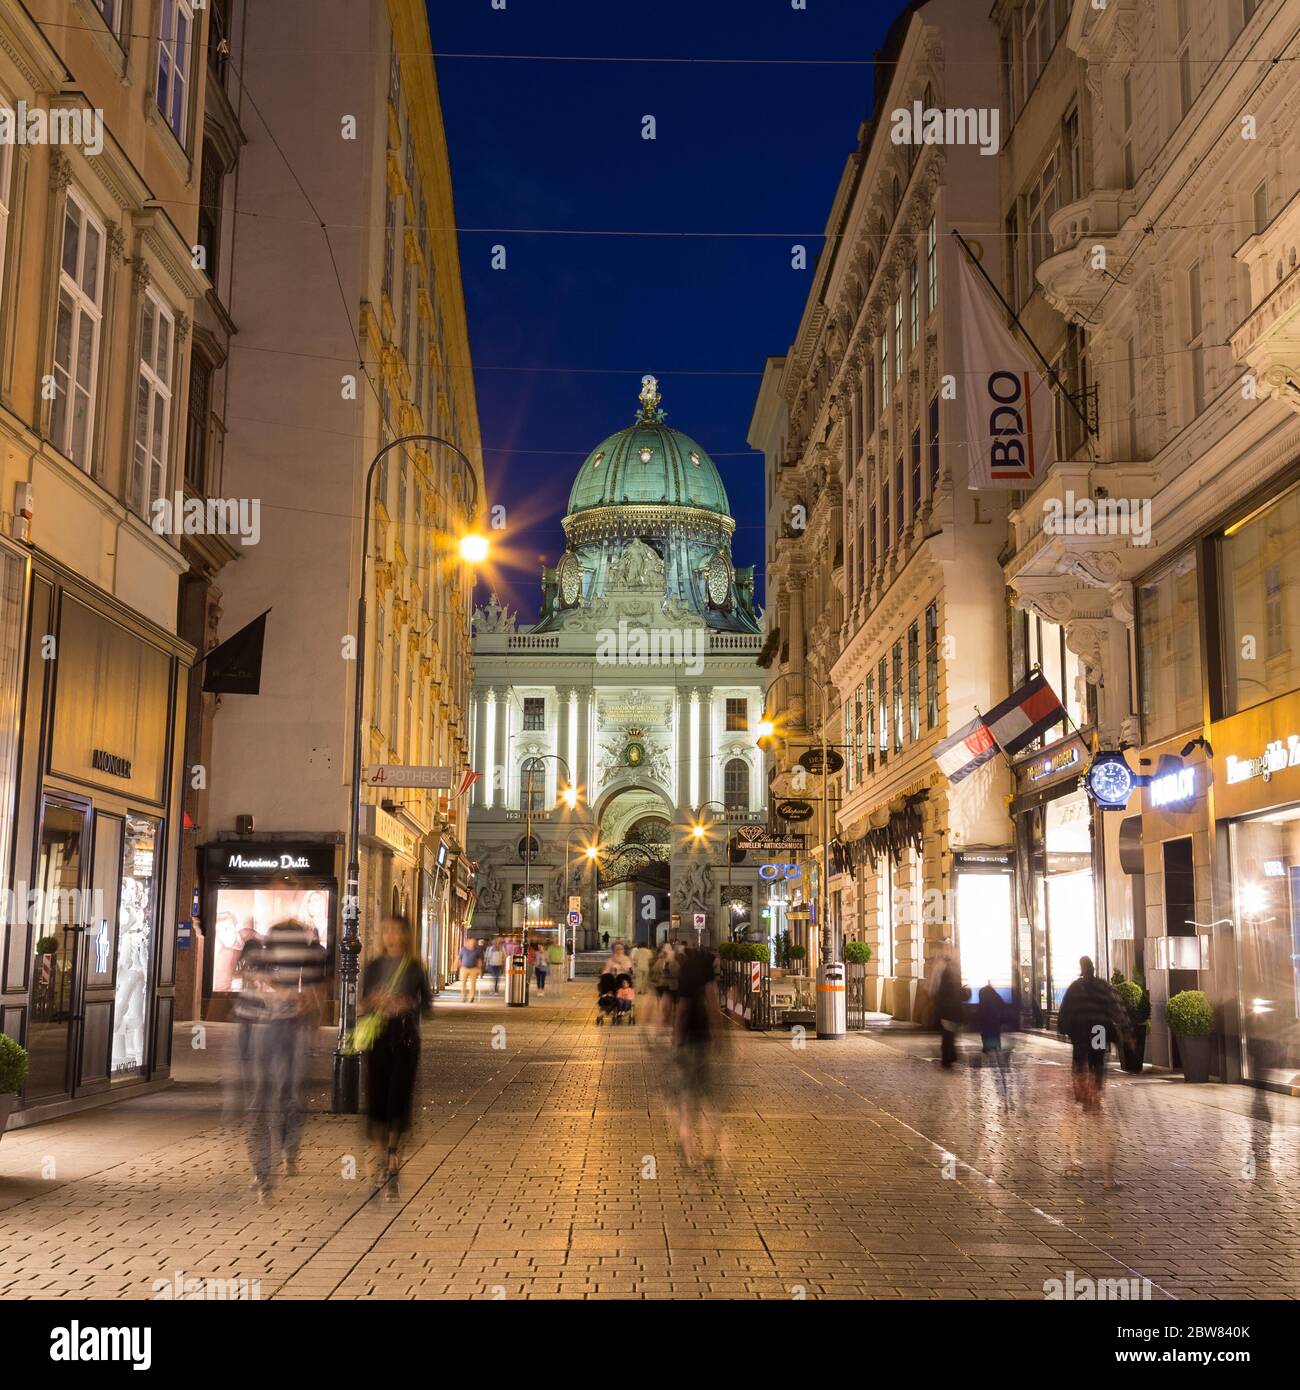 WIEN, ÖSTERREICH - 27. JULI 2015: Ein Blick auf den Kohlmarkt in Wien bei  Nacht, der das Äußere von Gebäuden und die Unschärfe der Menschen zeigt.  Teil des Hofbu Stockfotografie - Alamy